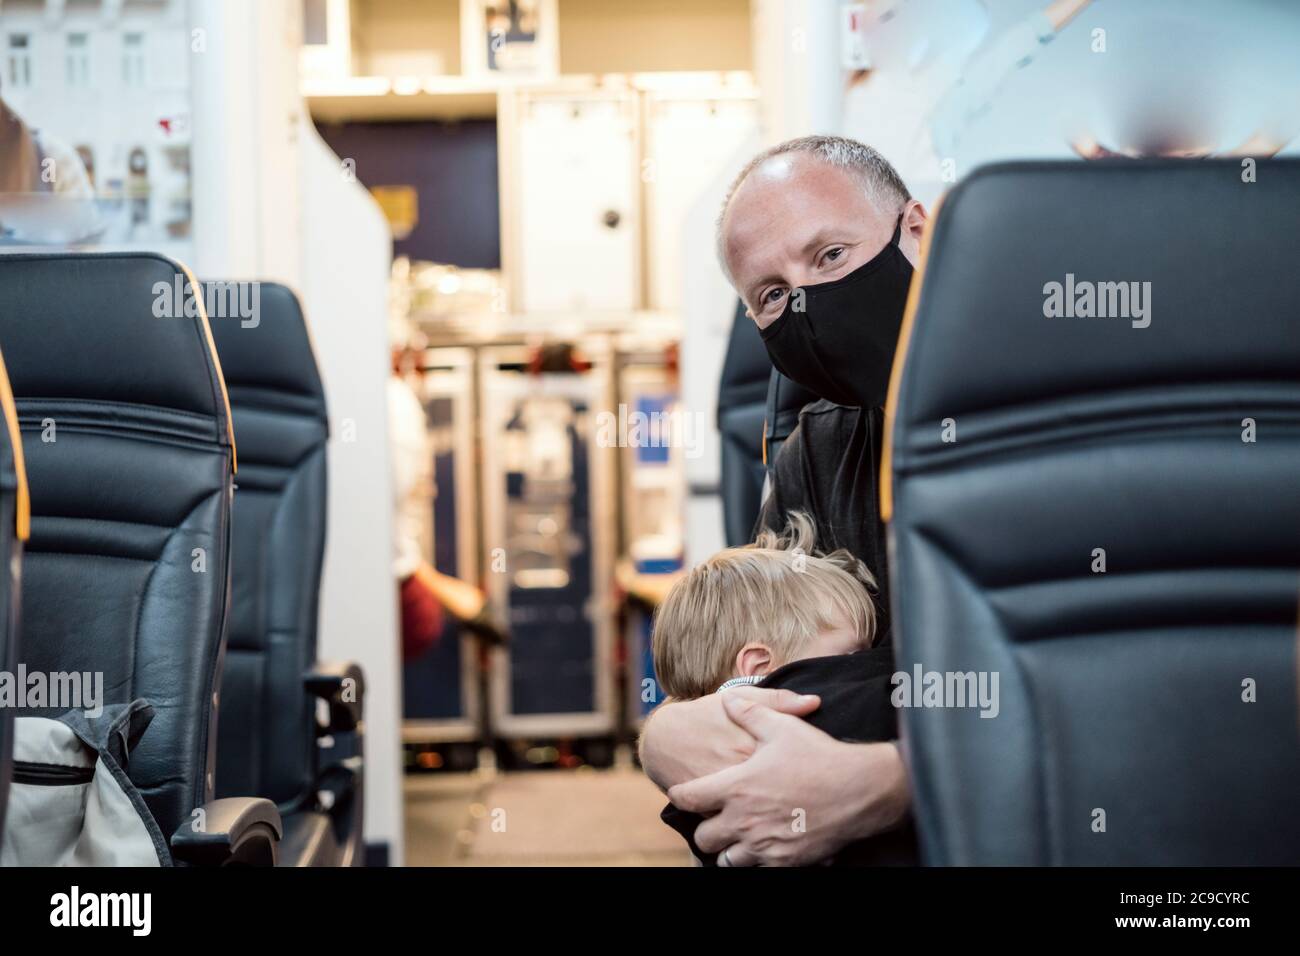 Mann in der Maske hält seinen kleinen schlafenden Sohn im Flugzeug Stockfoto